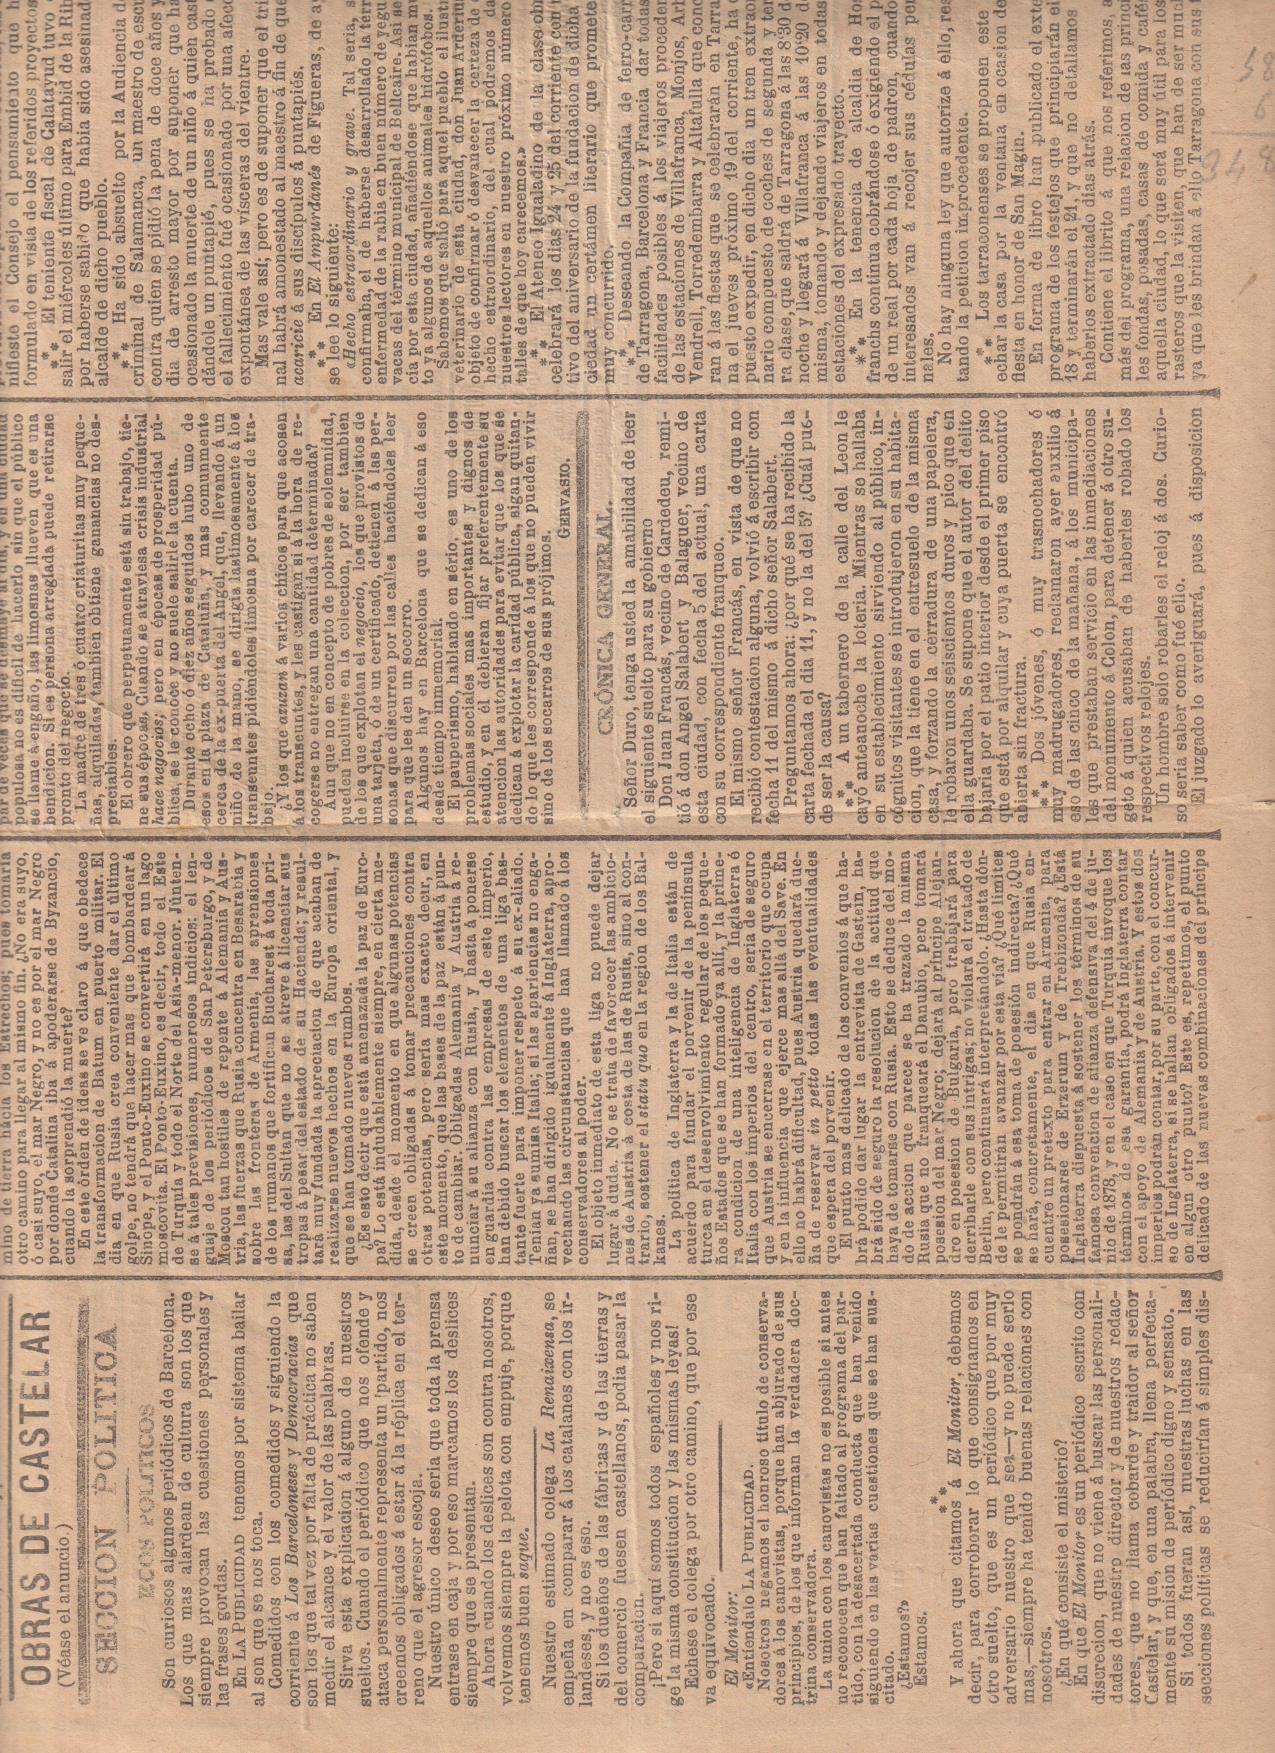 la publicidad, diario ilustrado, político nº 3088. Barcelona 16 de agosto de 1880. solo primera hoja